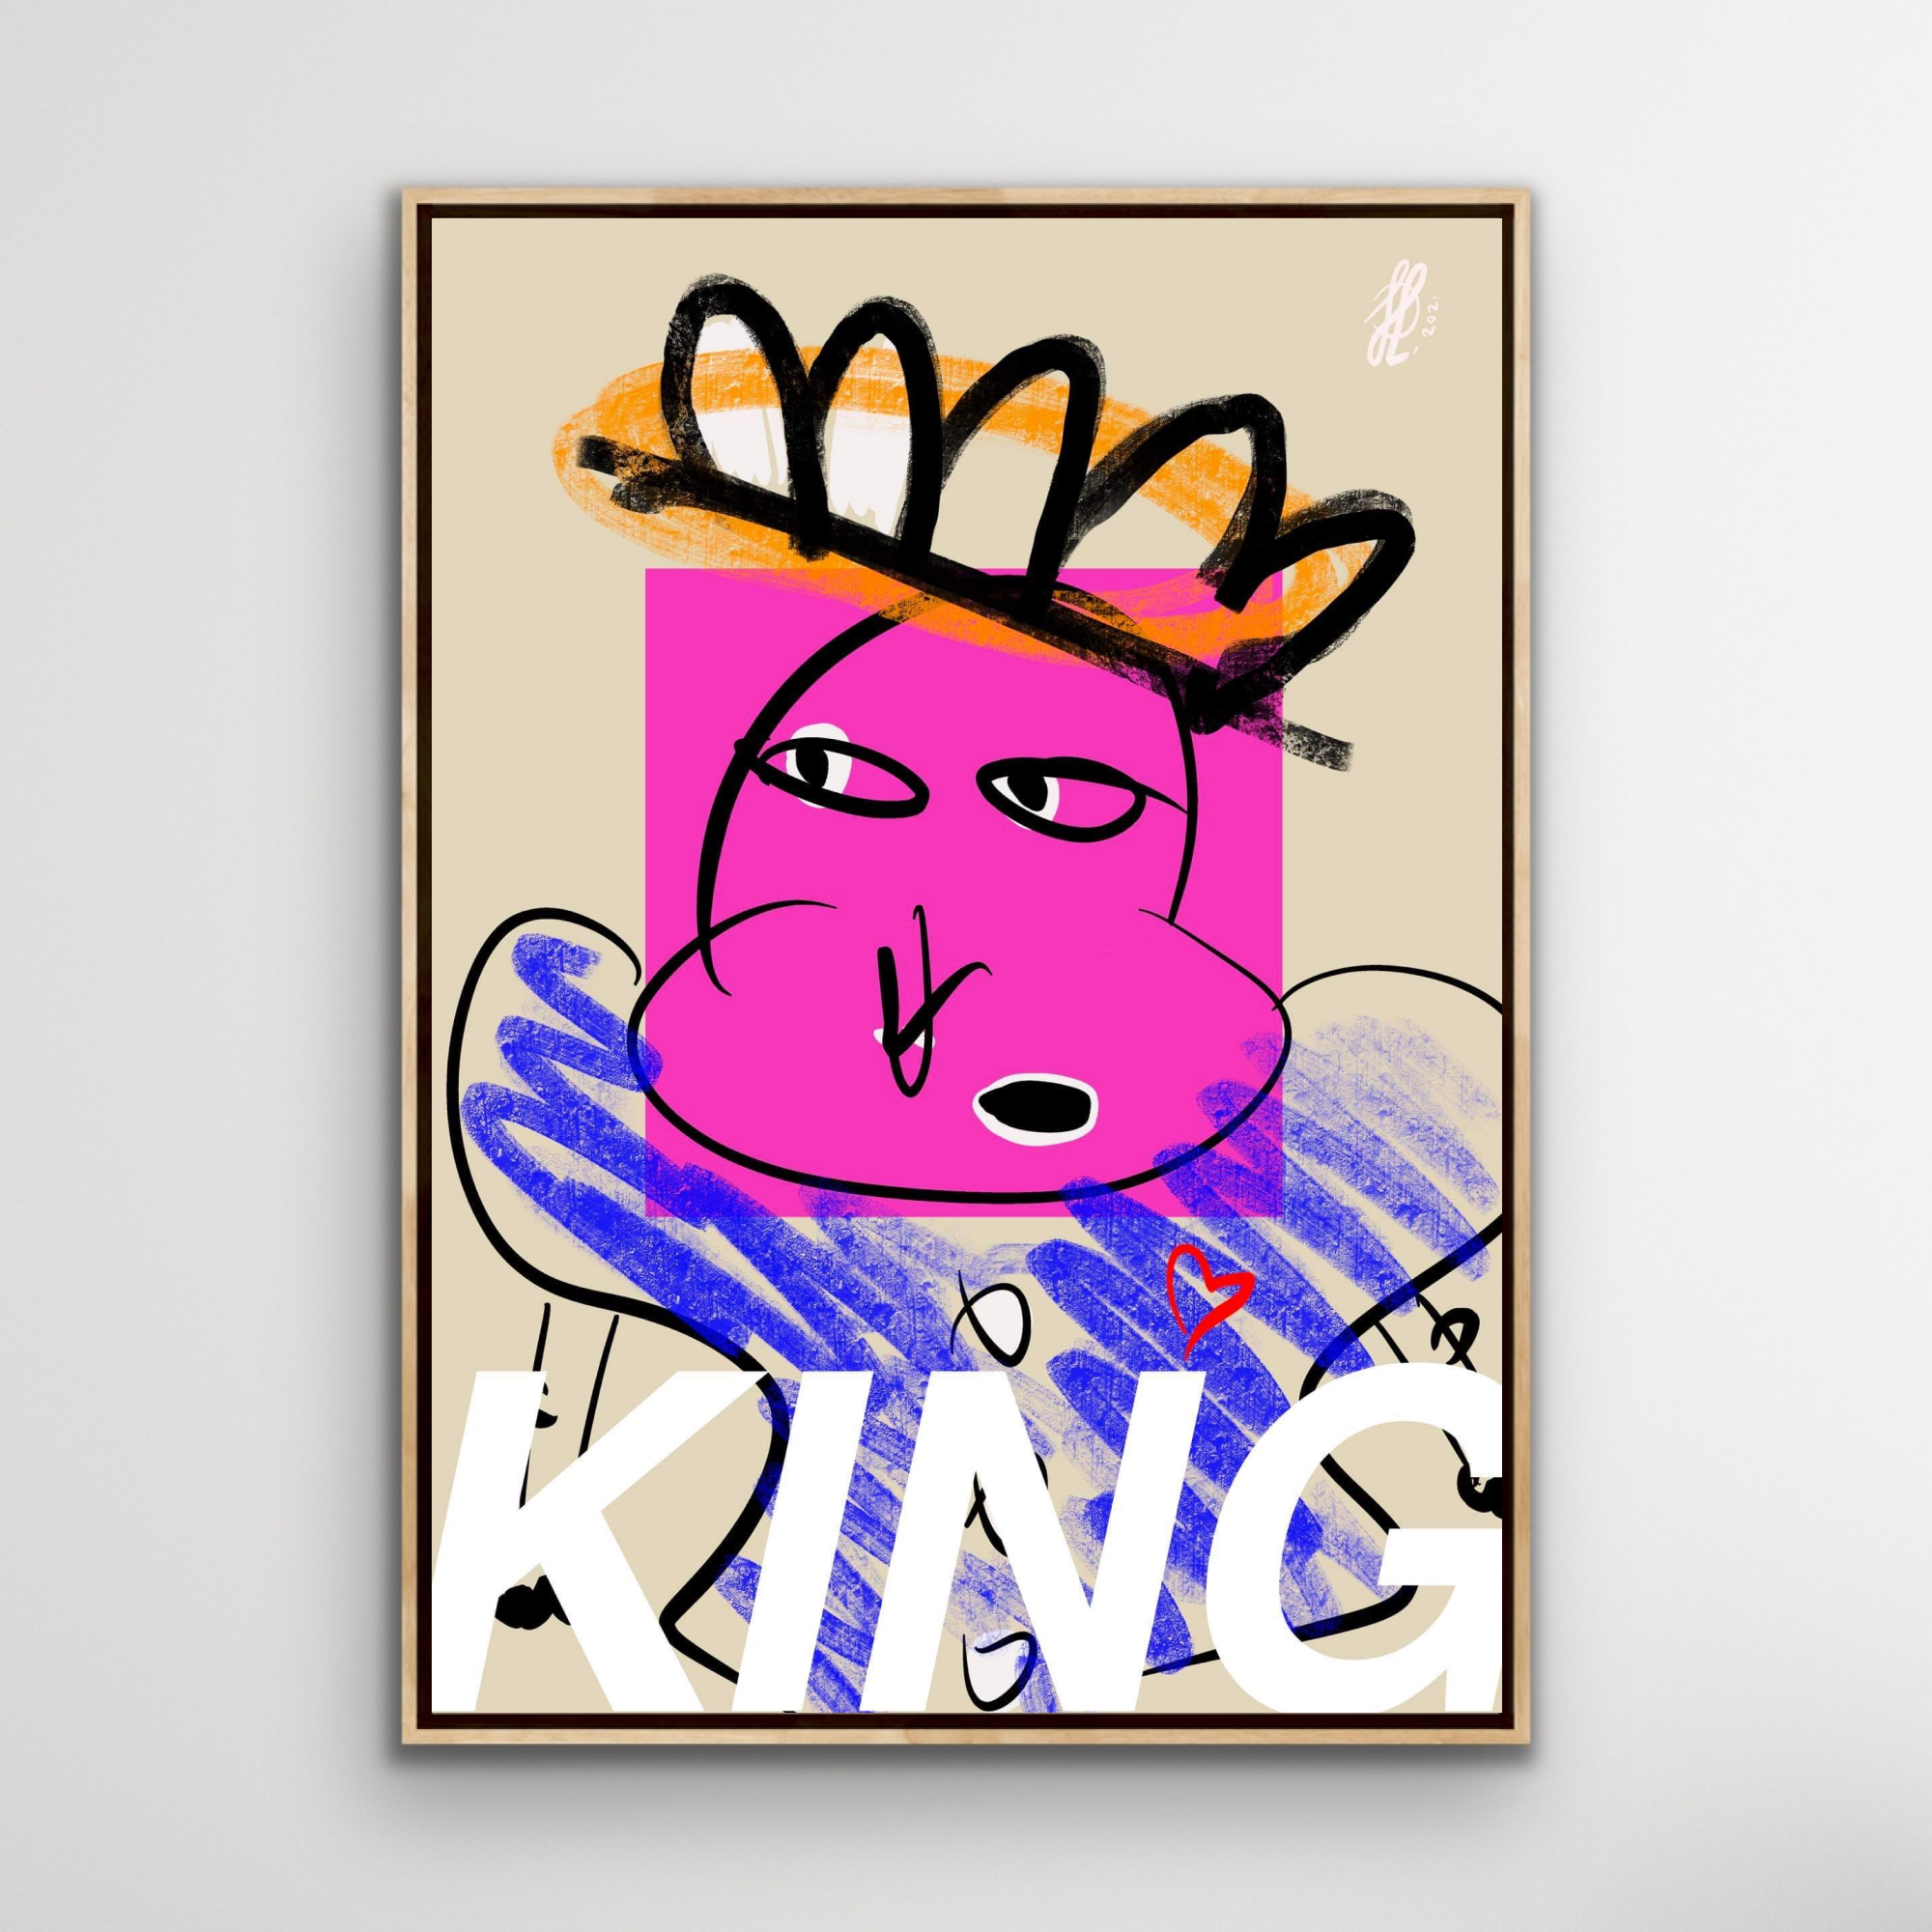 Lærredstryk: "King"